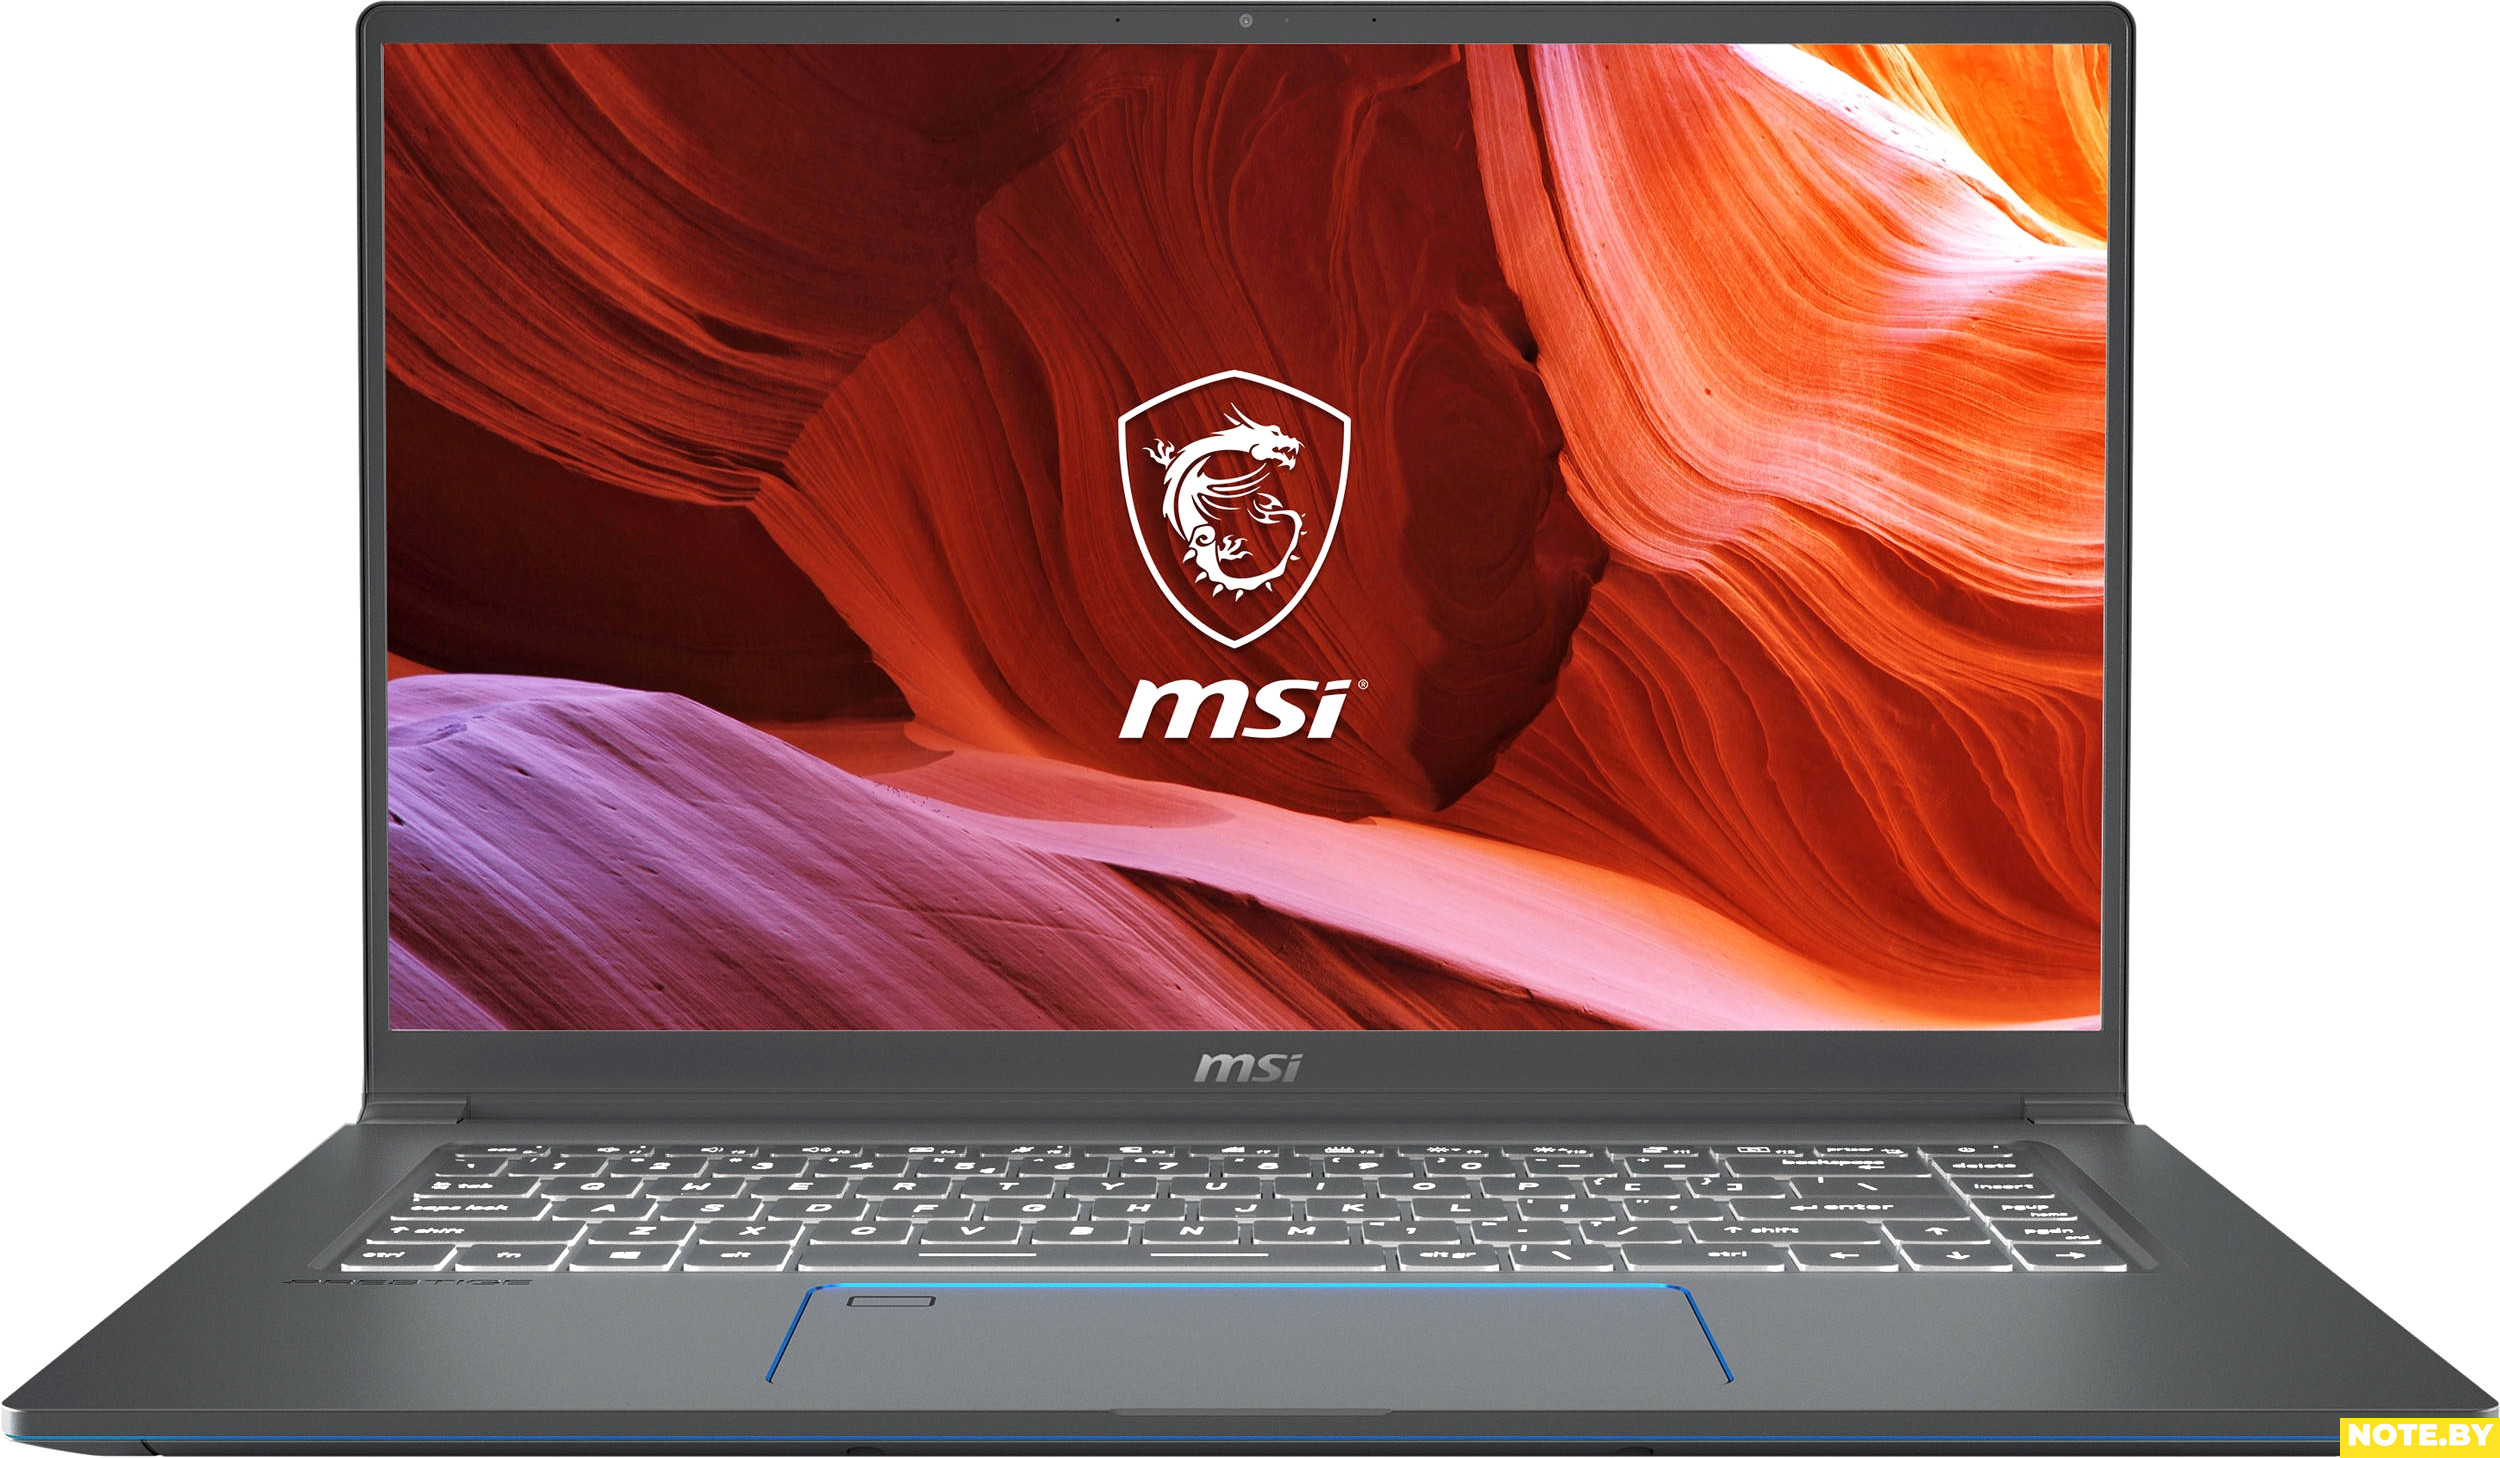 Ноутбук MSI Prestige 15 A10SC-213RU